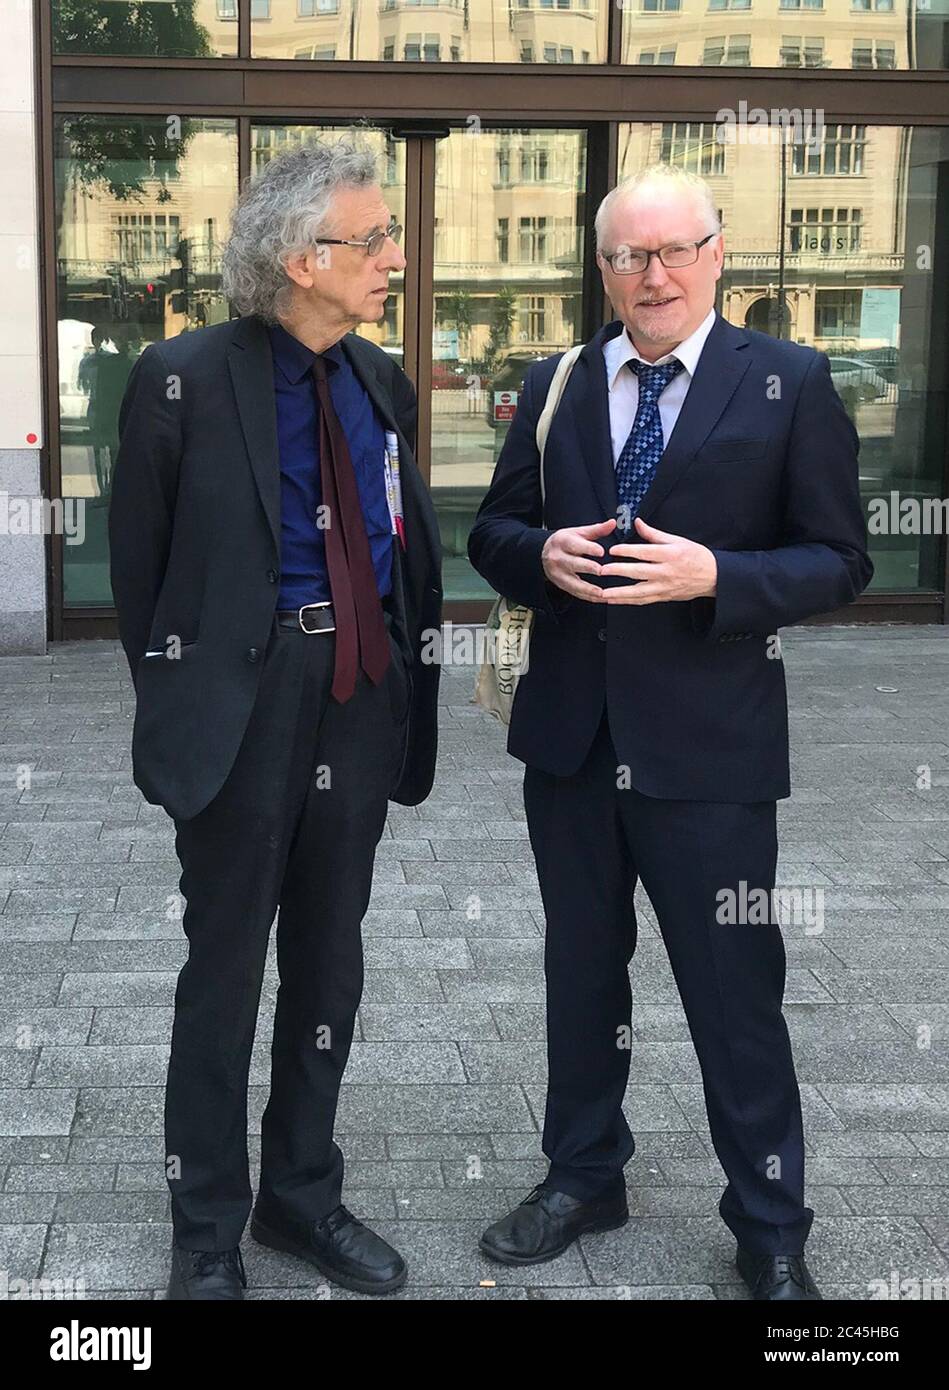 Piers Corbyn (links), der Bruder des ehemaligen Labour-Parteiführers Jeremy Corbyn, und sein Anwalt Richard Parry bei den Londoner Richtern von Westminster, wo er wegen Verstoßes gegen die Sperrregeln angeklagt wird. Stockfoto